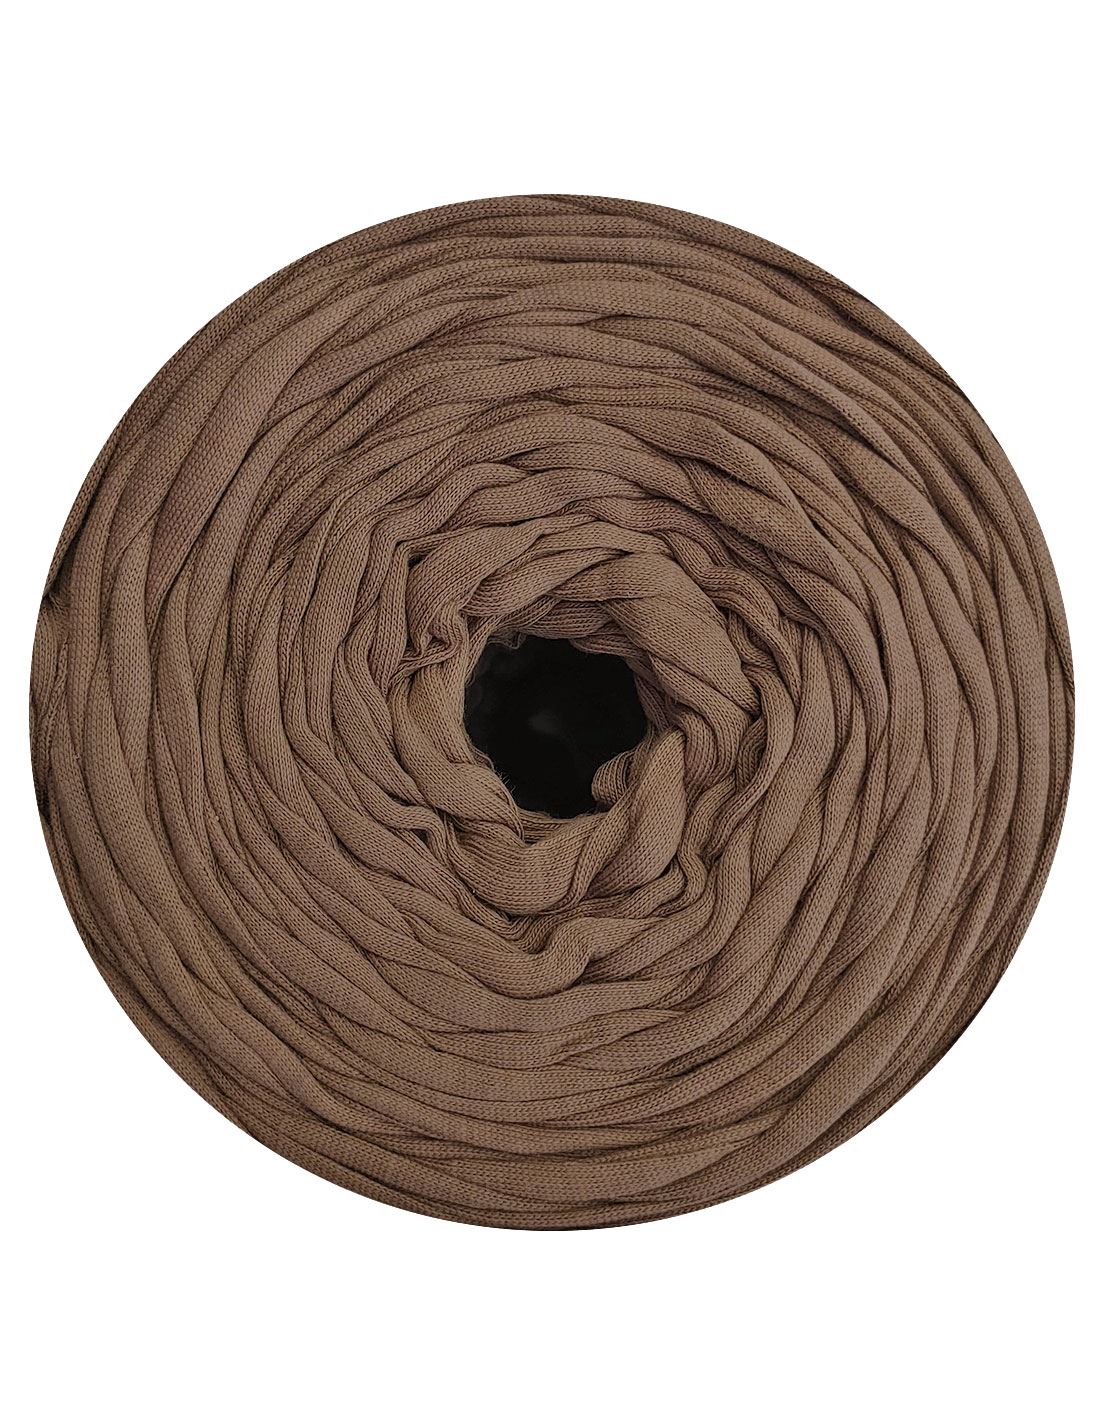 Light mocha brown t-shirt yarn by Rescue Yarn (100-120m)